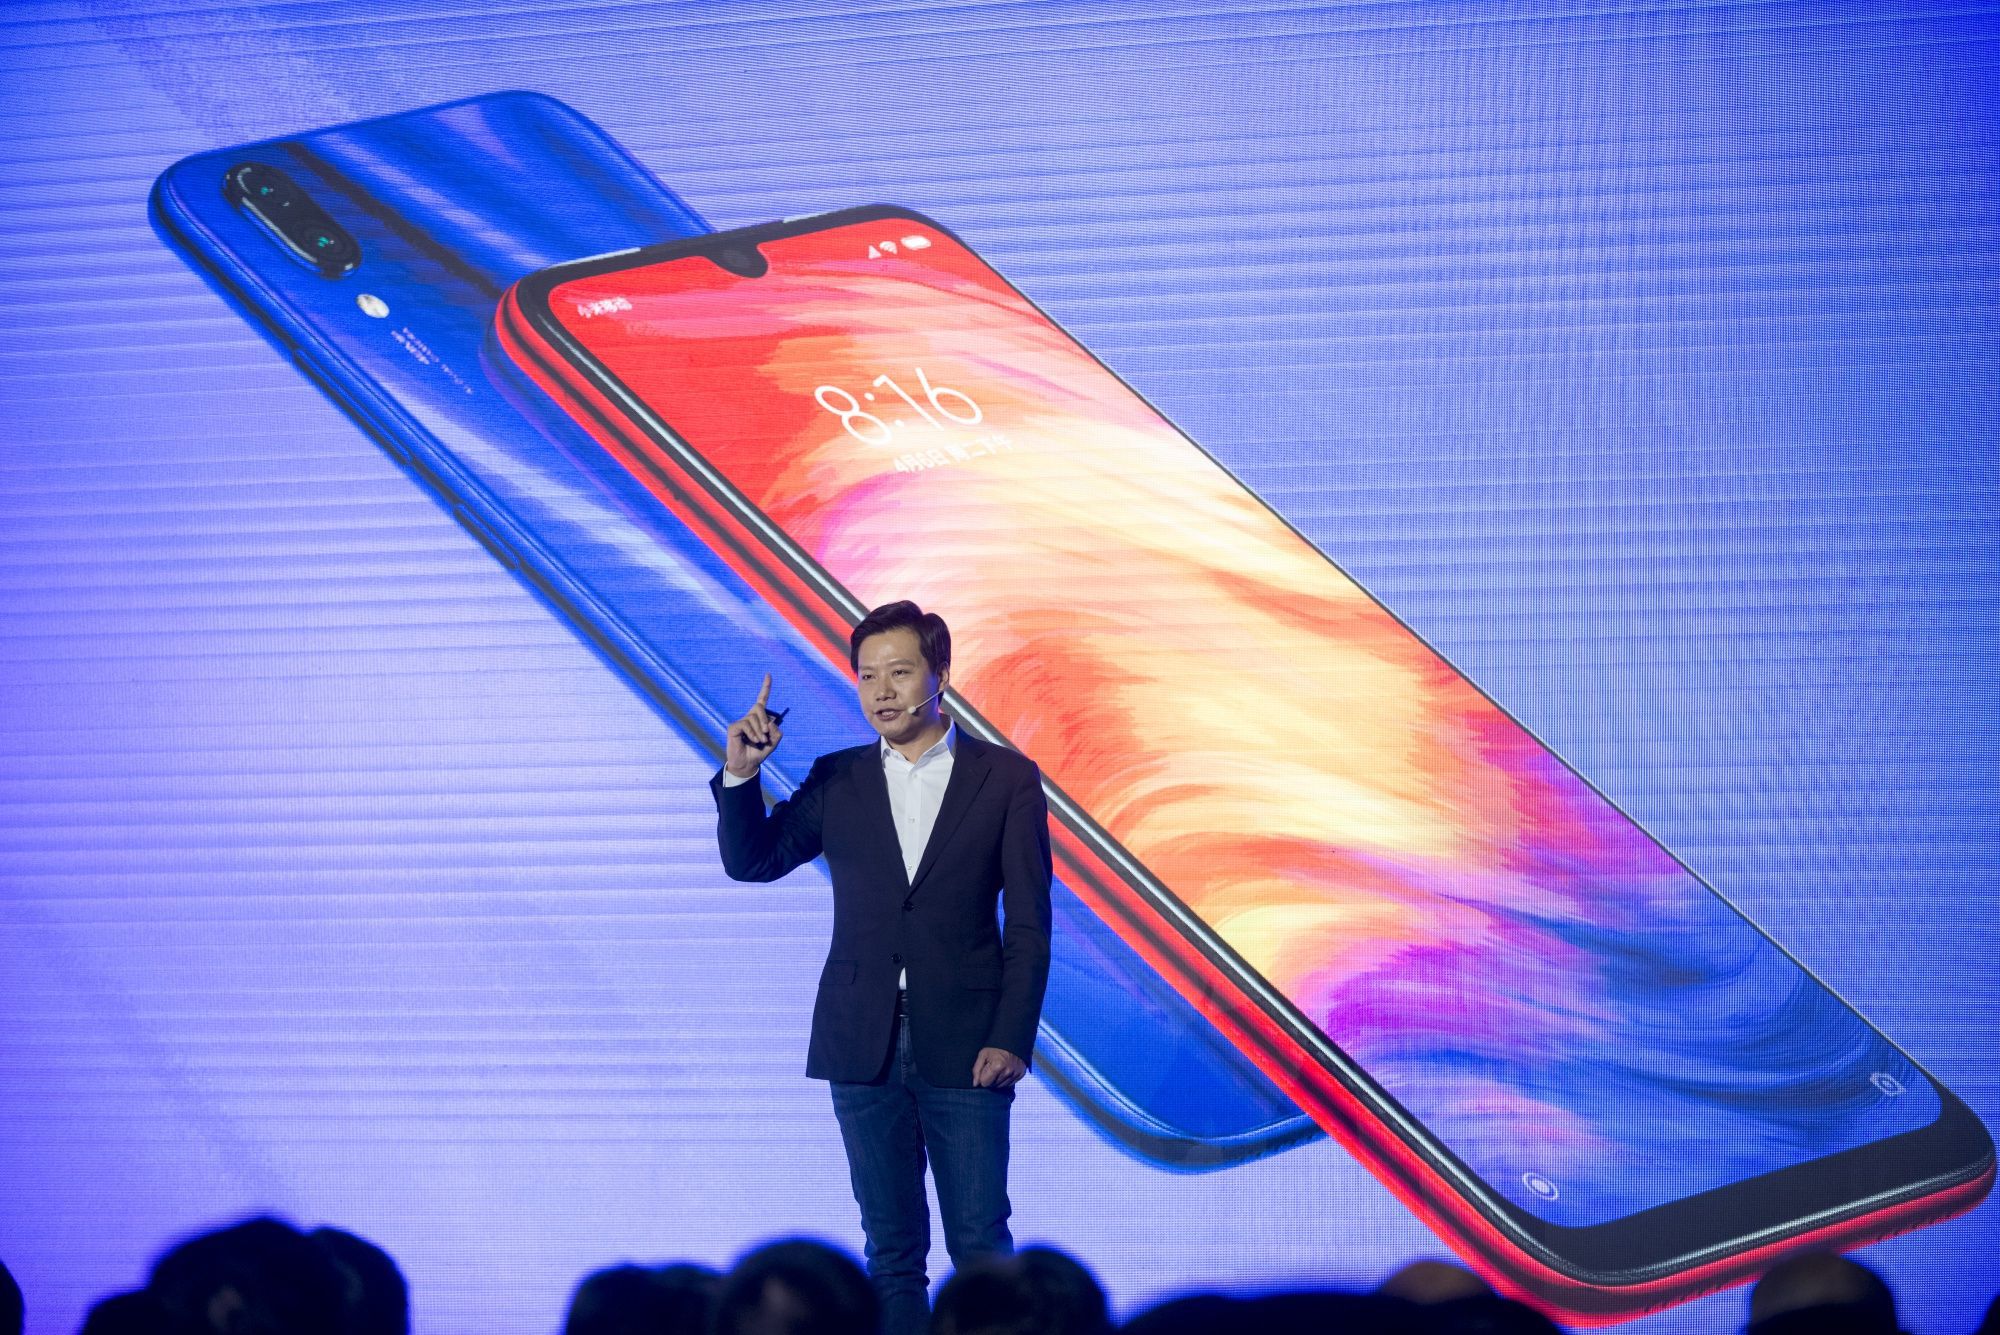 Lei Jun, CEO de Xiaomi Corp, fue premiado por el régimen de Beijing por su rol de “Constructor destacado del socialismo con características chinas” 